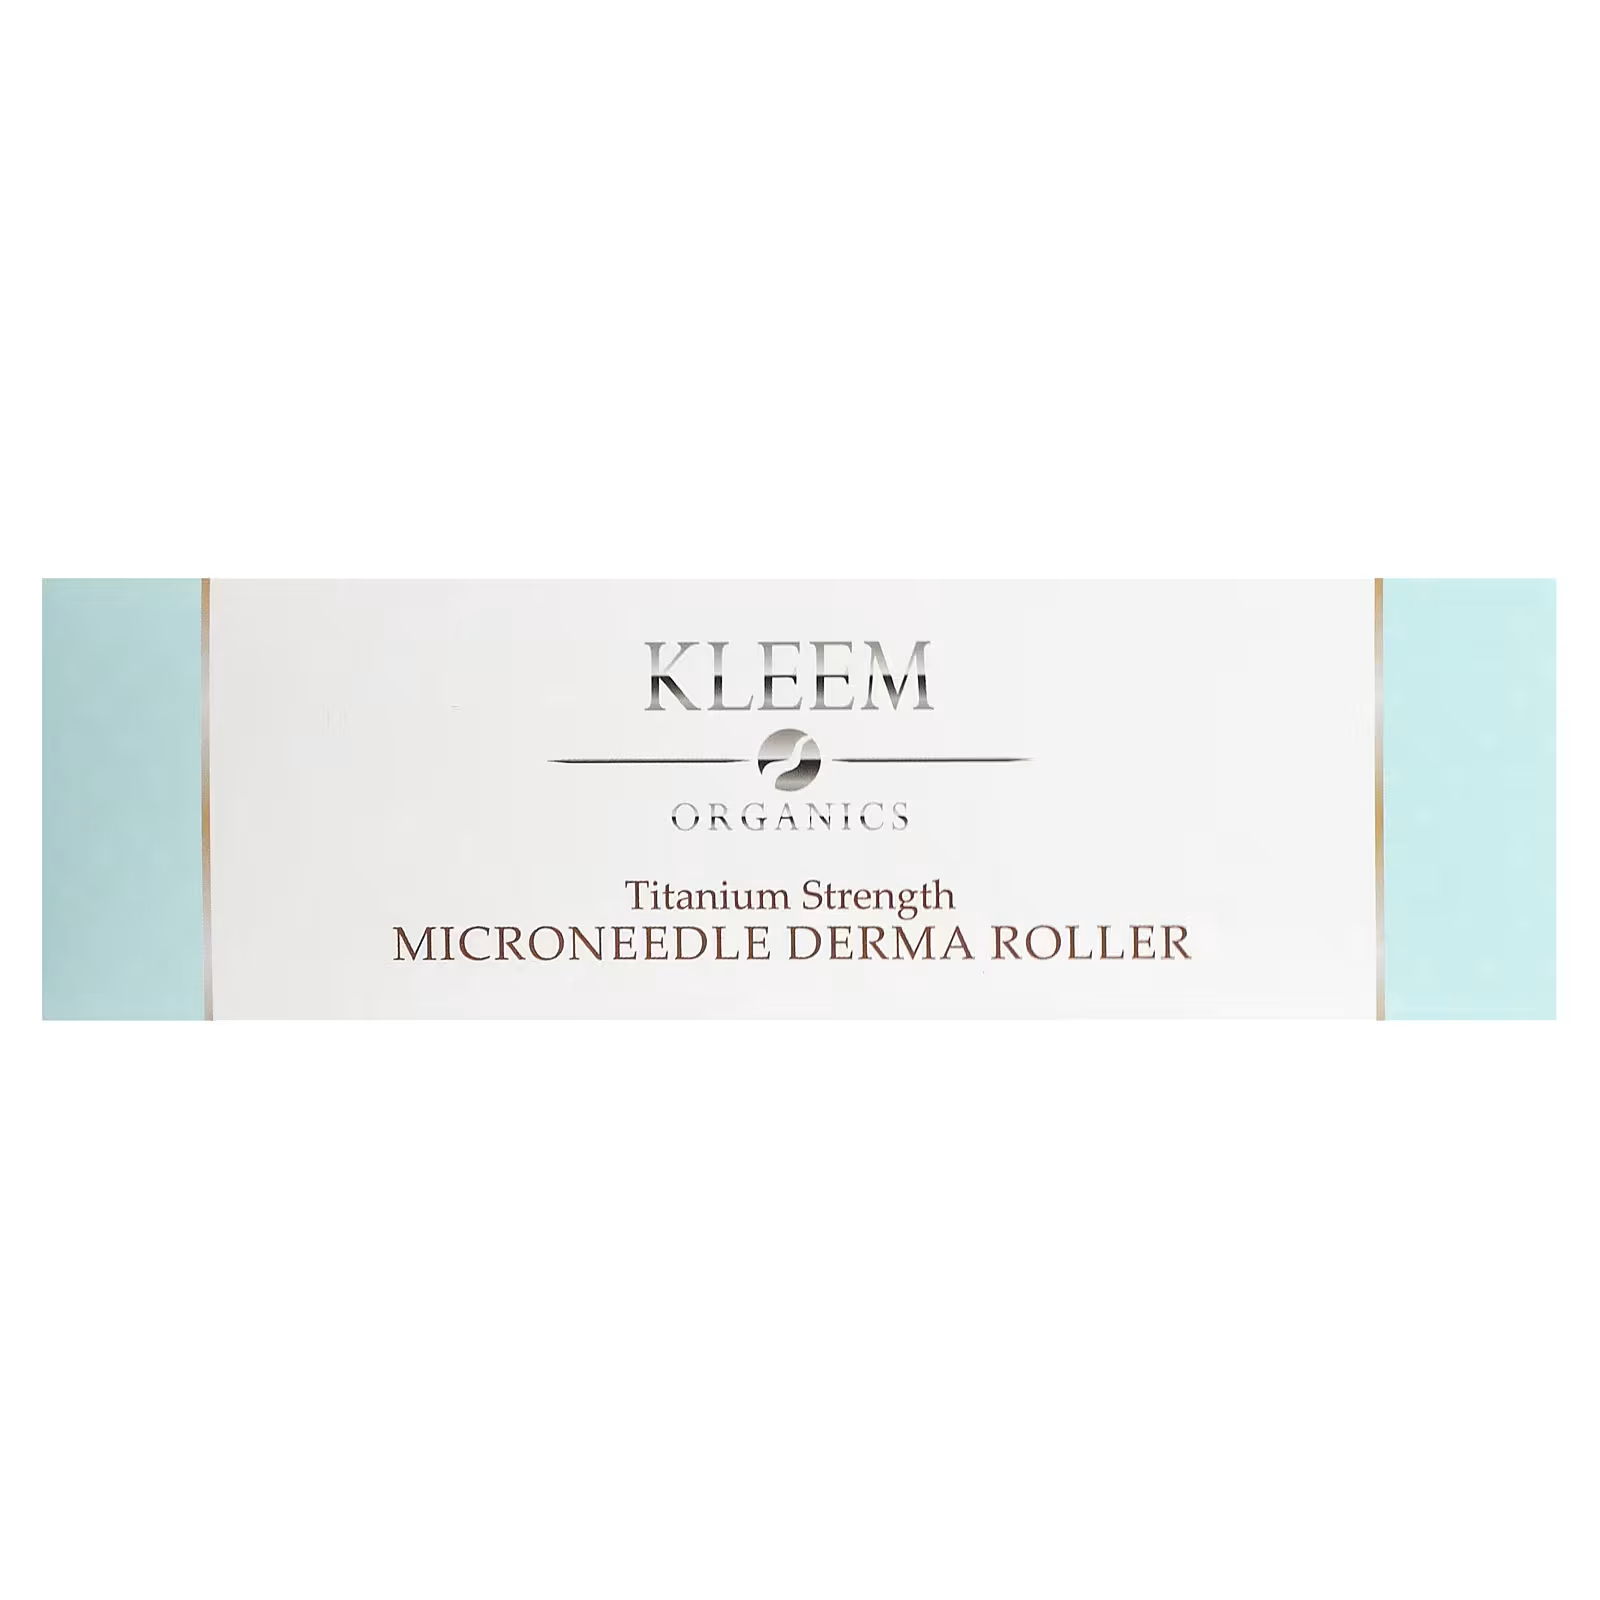 Ролик дерматологический Kleem Organics Microneedle Derma Roller Titanium Strength